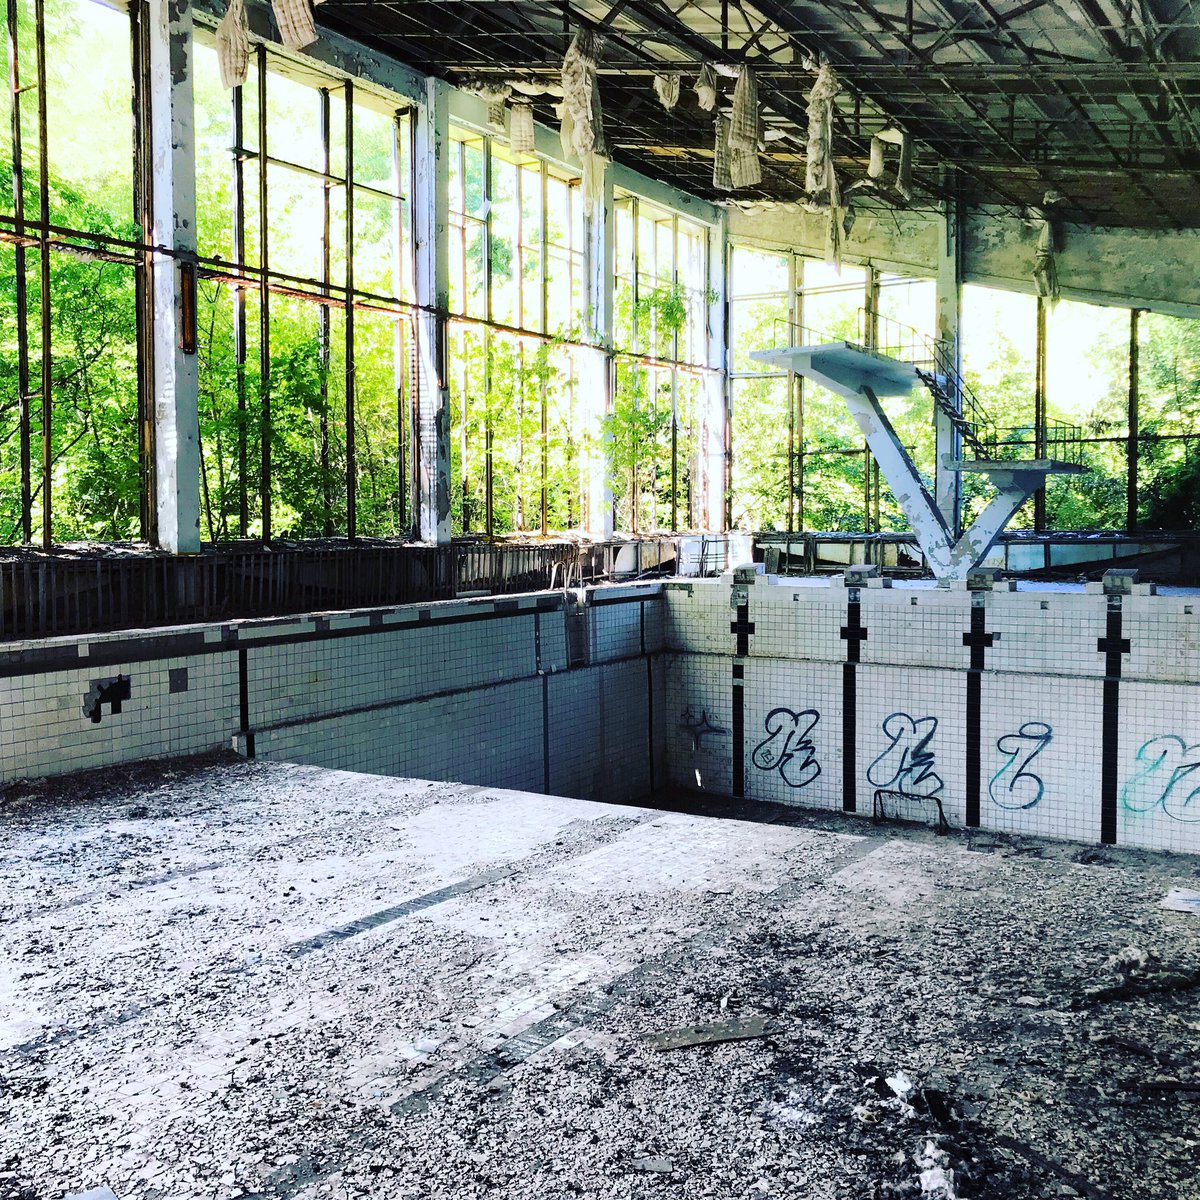 Une fois arrivés sur place nous partons à pied visiter la ville. Nous commençons par la piscine. Et la salle de sport. Tout est délabré est tombe en ruine. La végétation a envahi les lieux.  #Tchernobyl  (Plus de photos:  http://Instagram.com/nashtagstagram )